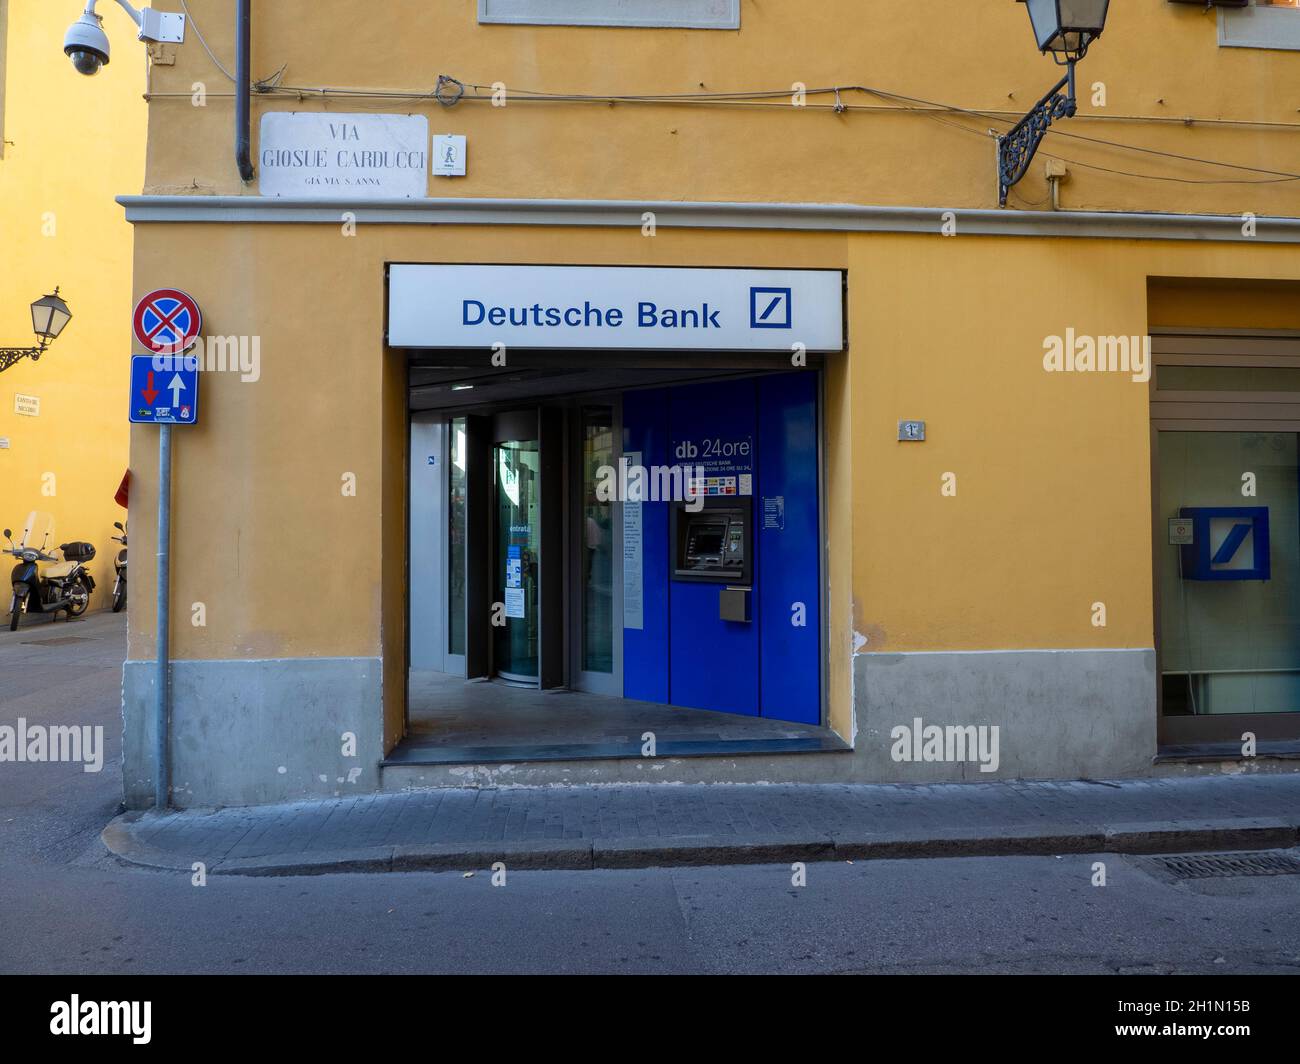 Filiale della Deutsche Bank in Via Giosué Carducci - Pisa Foto Stock